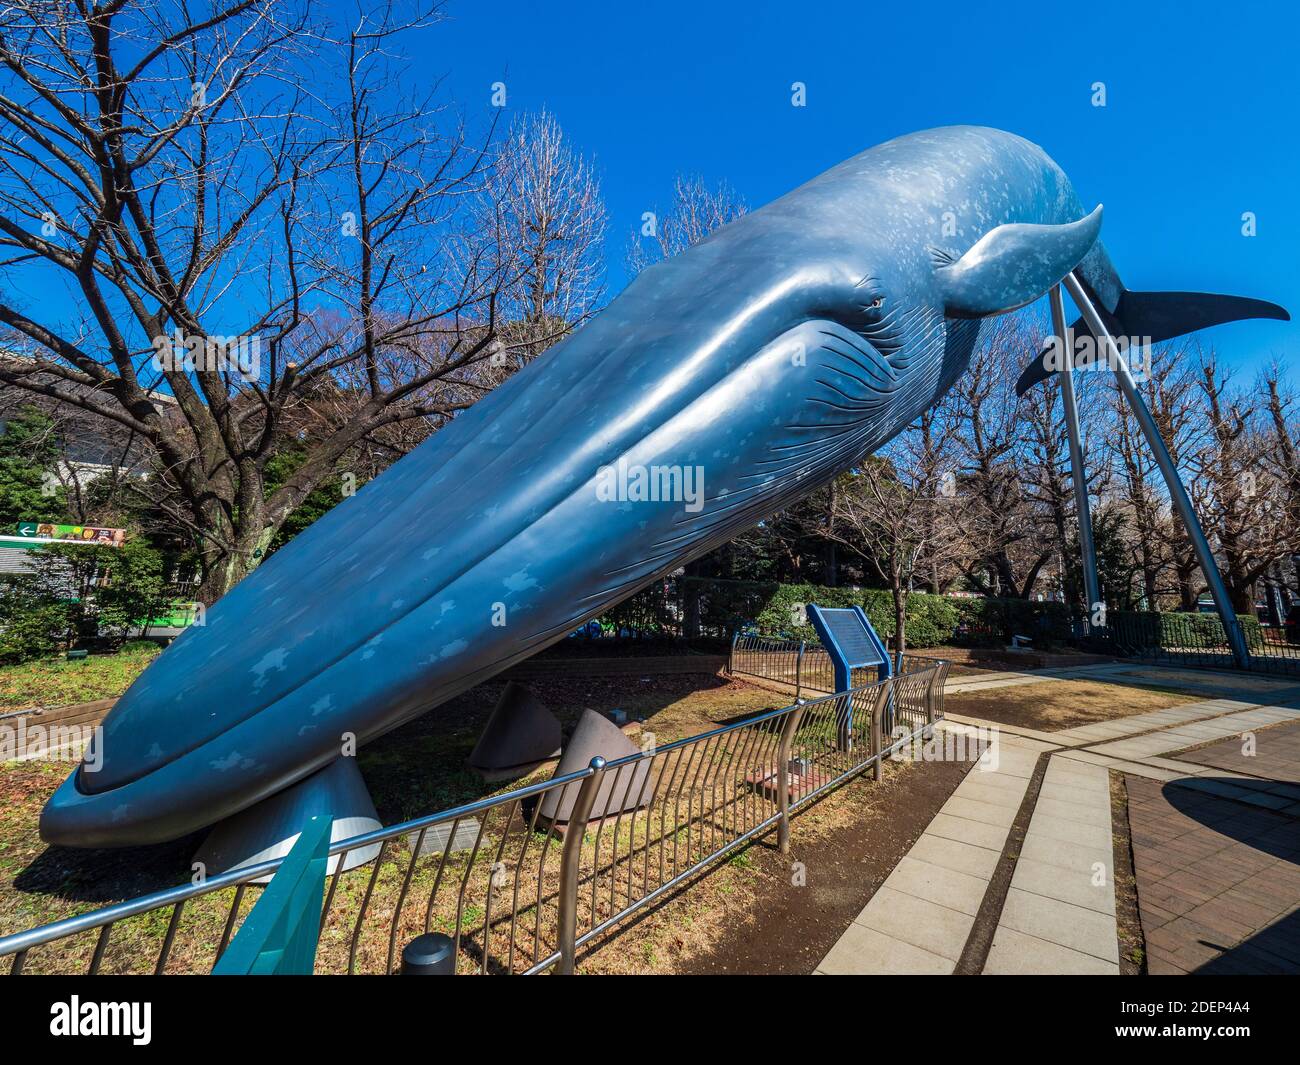 Modèle de baleine bleue LifeSize devant le Musée national de la nature et des sciences Parc Ueno Tokyo. Banque D'Images